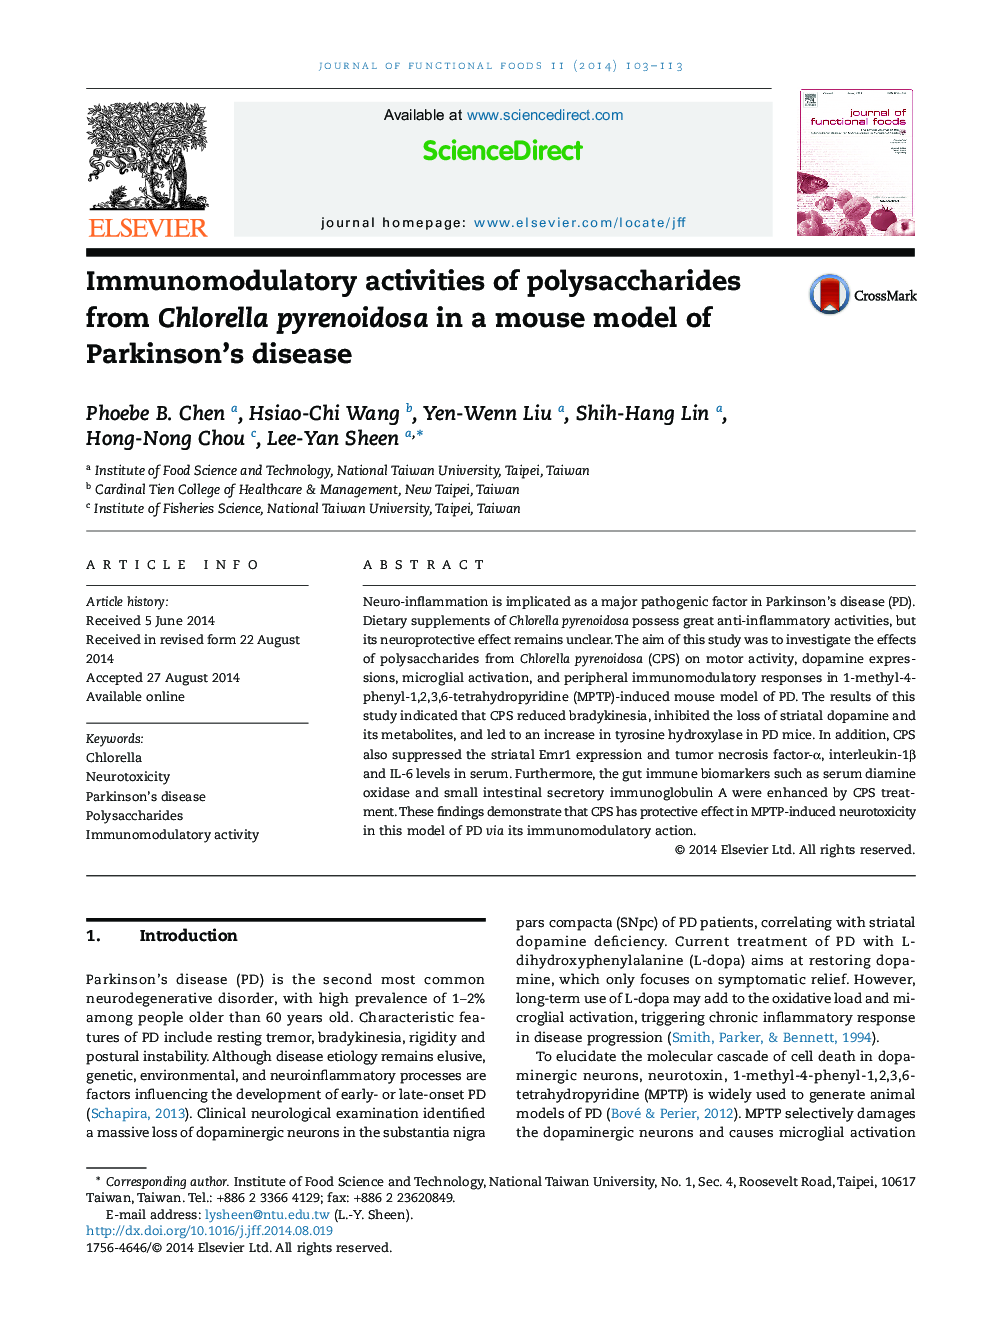 فعالیت های ایمونومولدولسیون پلی ساکارید از کلرلا پنیوئیدوز در یک مدل موش از بیماری پارکینسون 